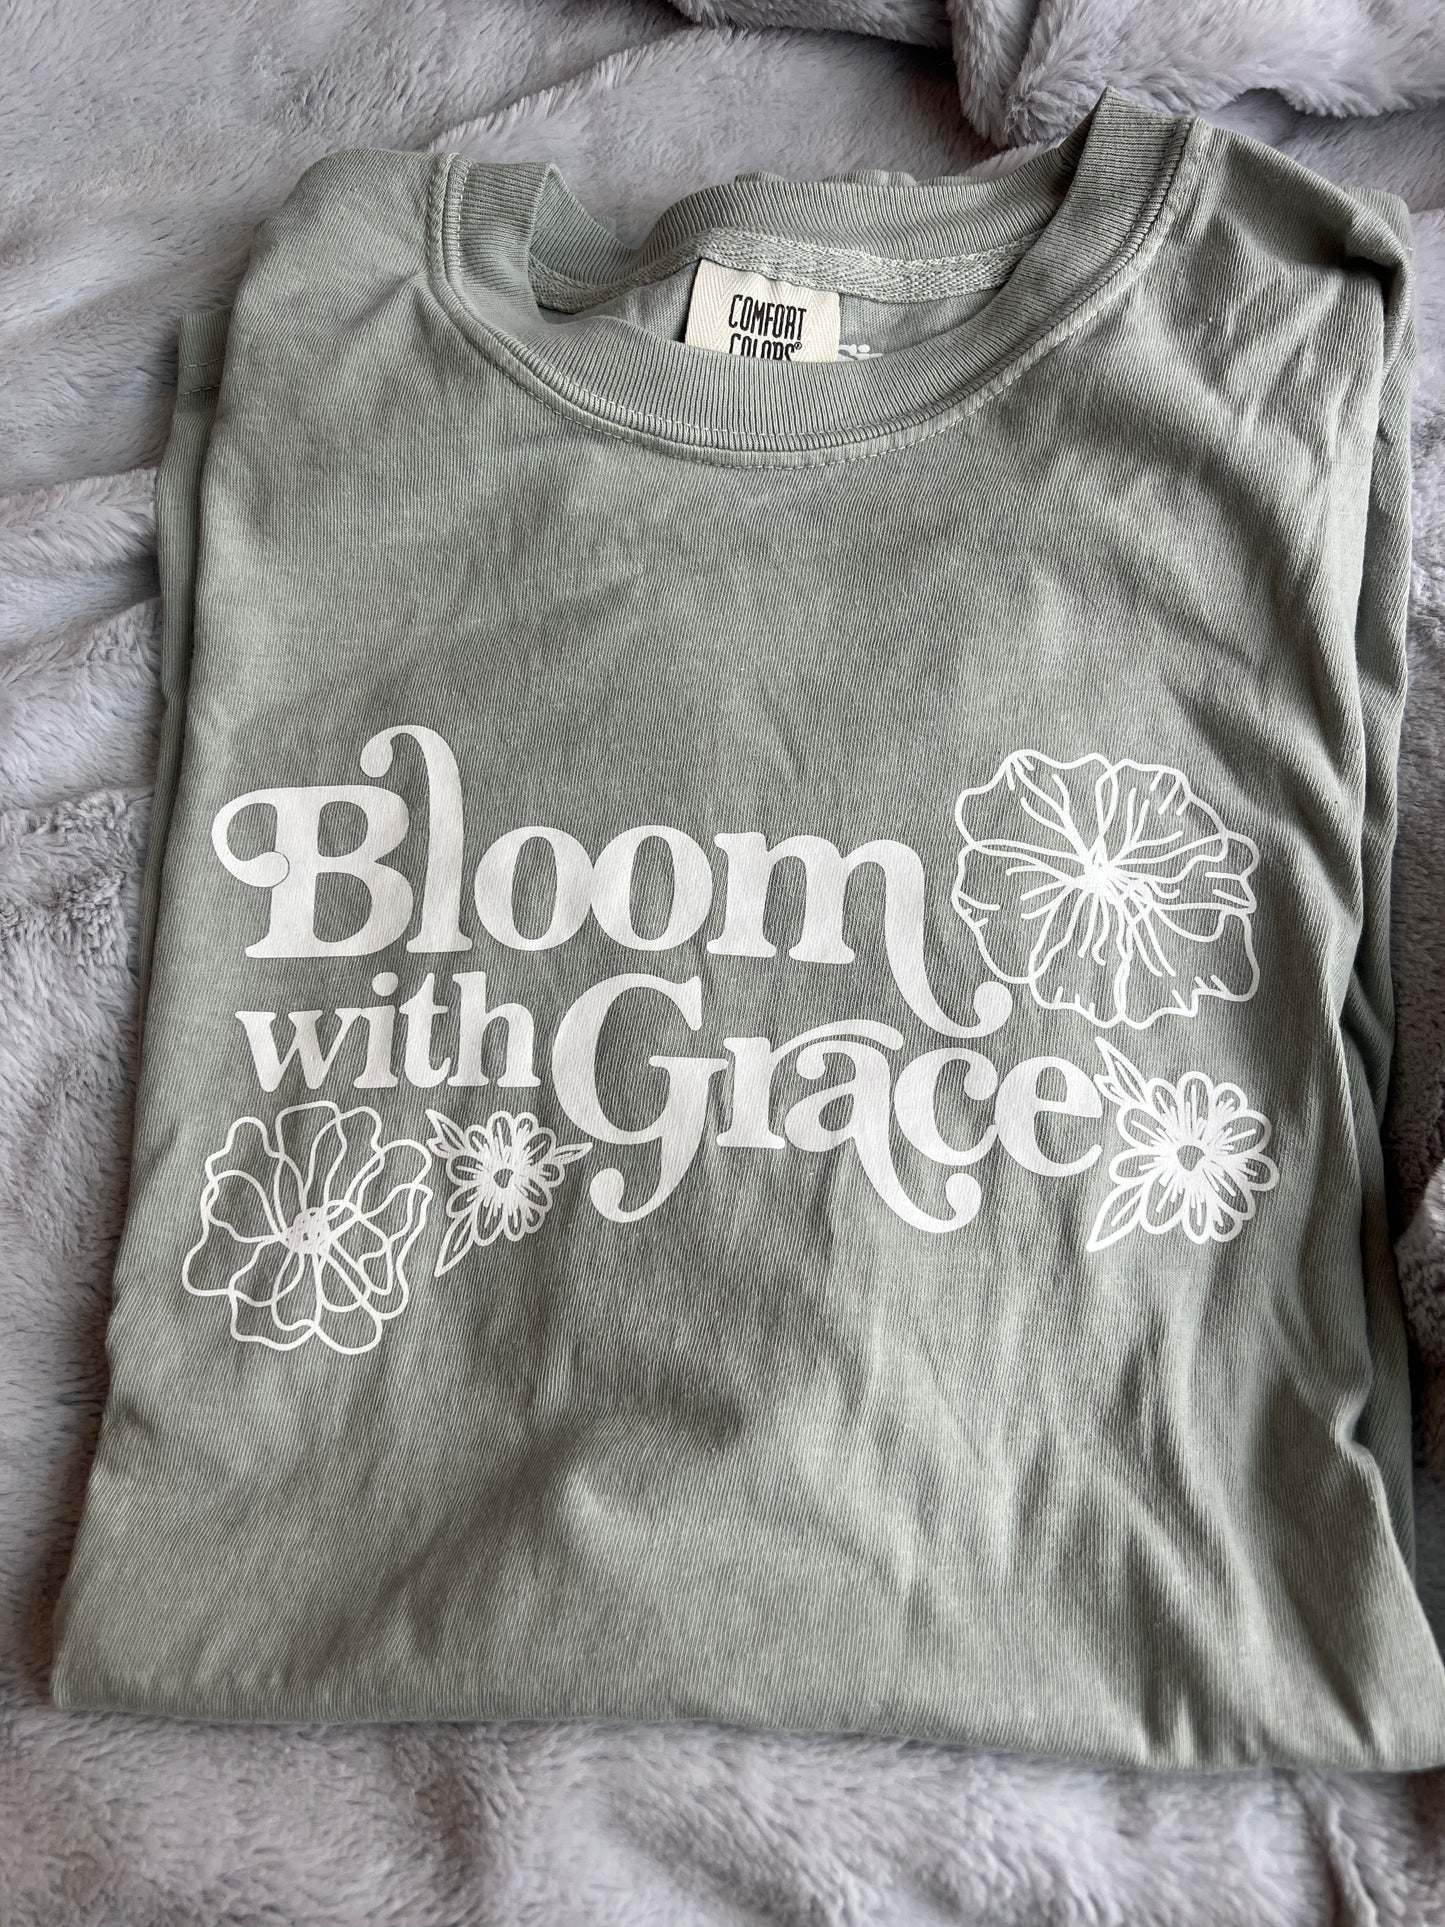 Bloom with Grace Tee, Oopsie